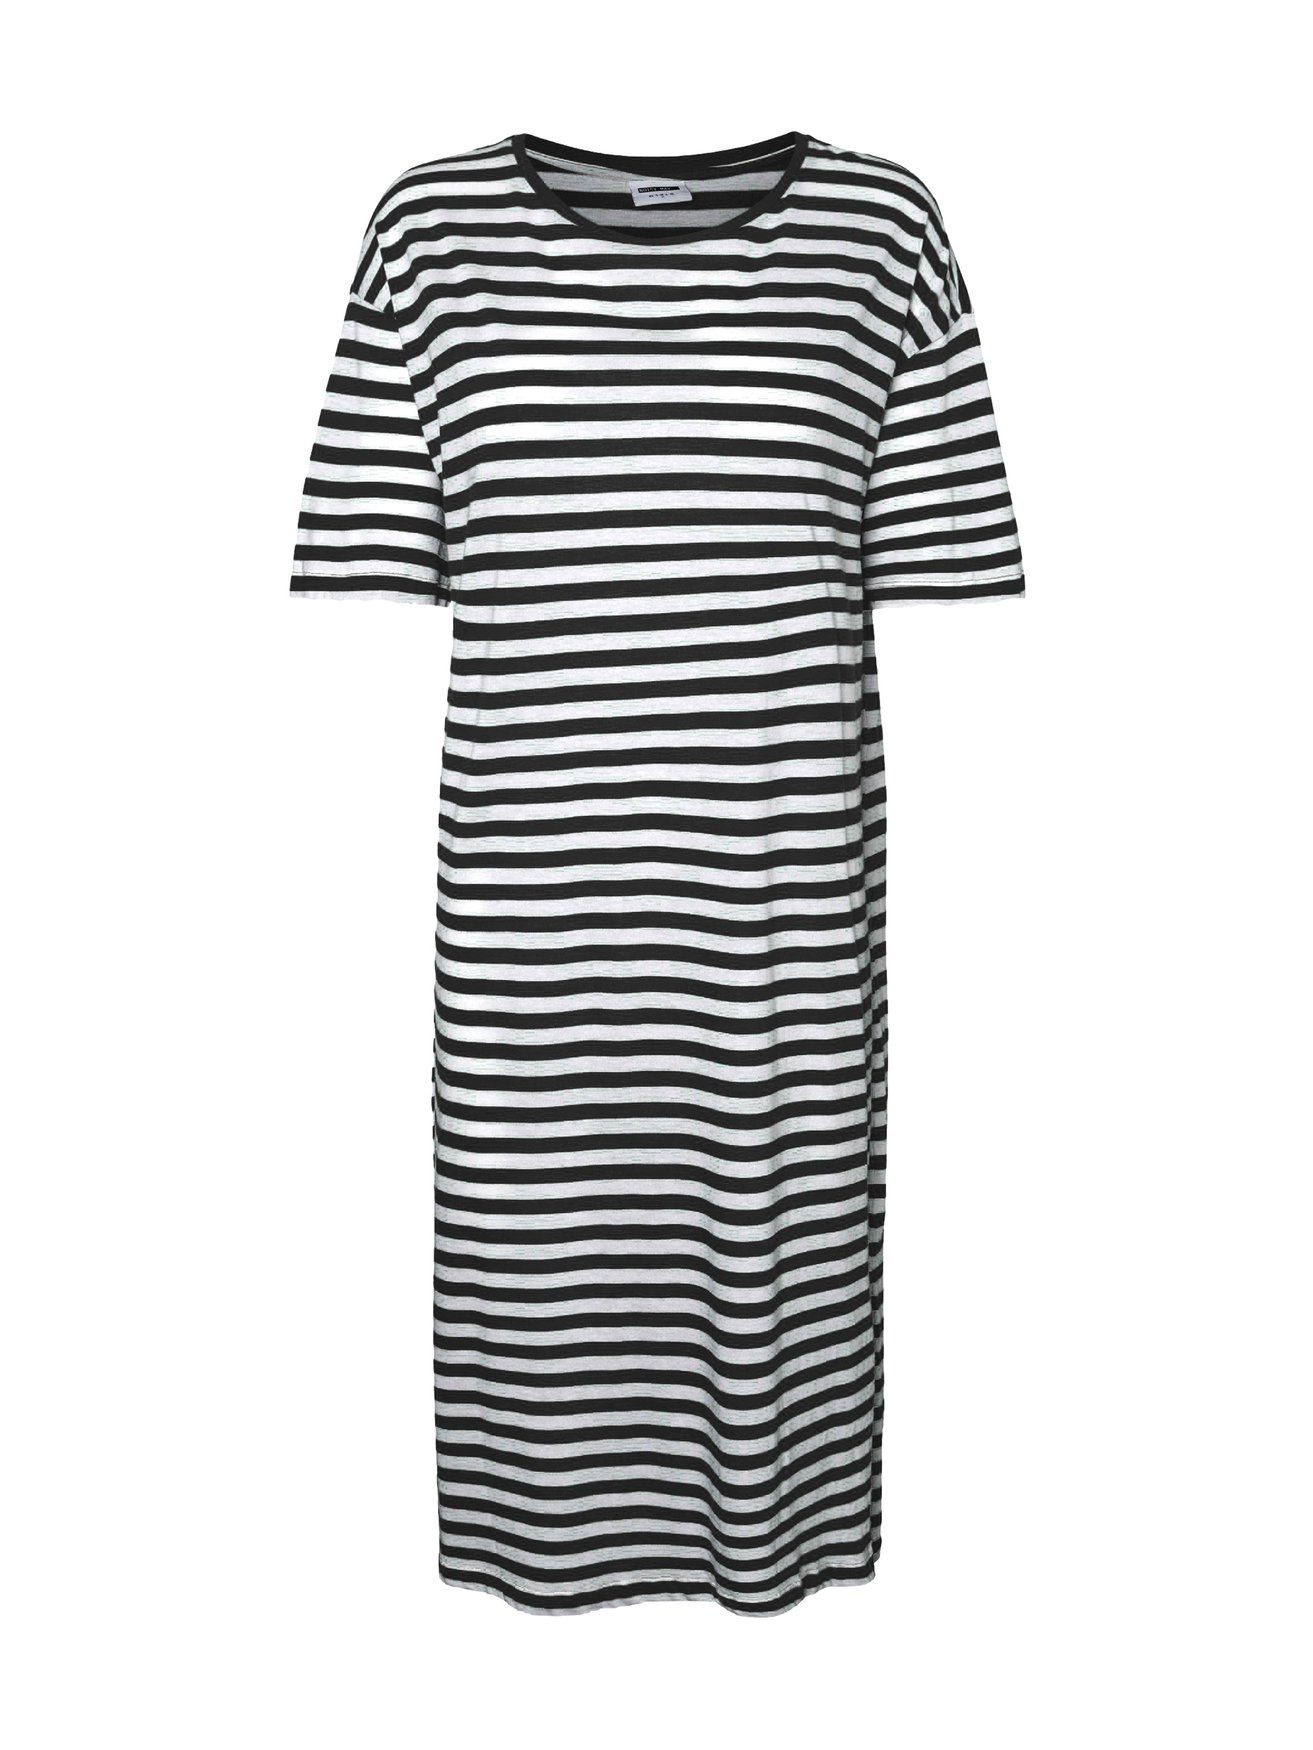 Kleid Dress 5391 weiß/schwarz Noisy Kurzarm Regular in Shirtkleid Fit Sommer Rundhals may (lang)